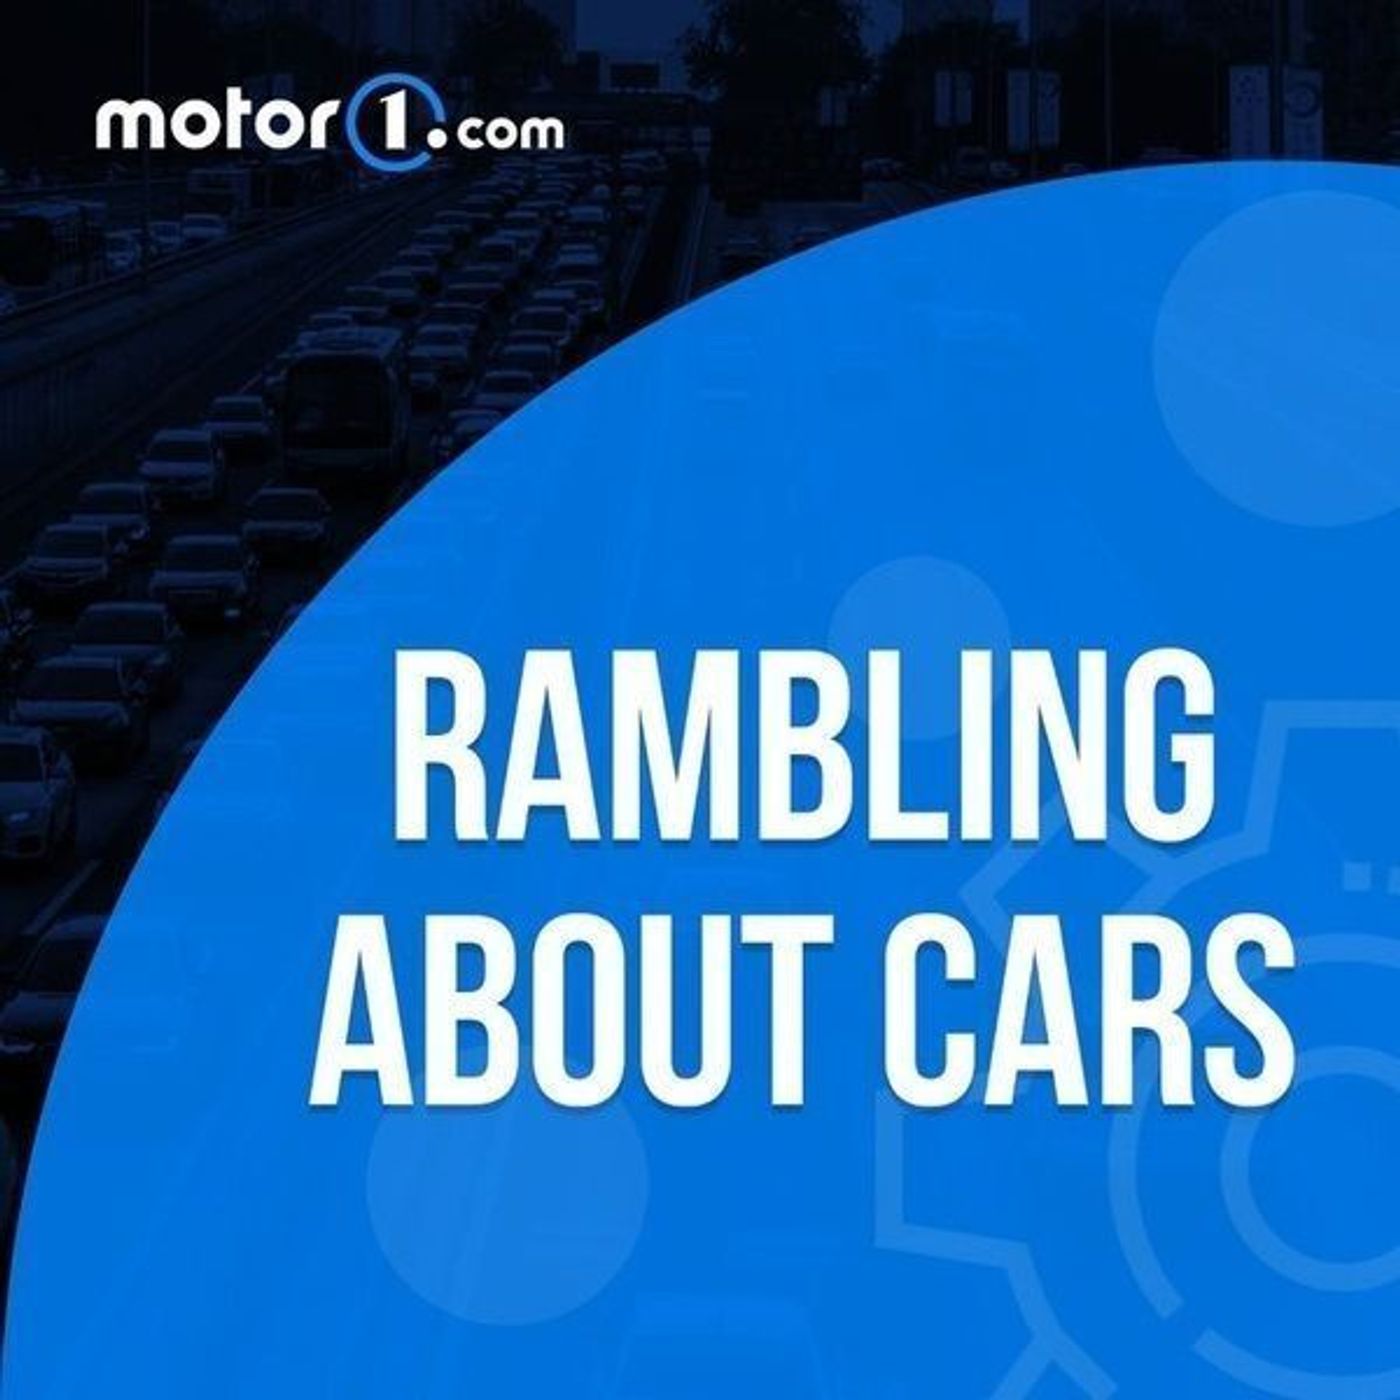 S2 Ep133: Hyundai Santa Fe, Chevy Traverse, Goodwood Highlights: Rambling About Cars 133